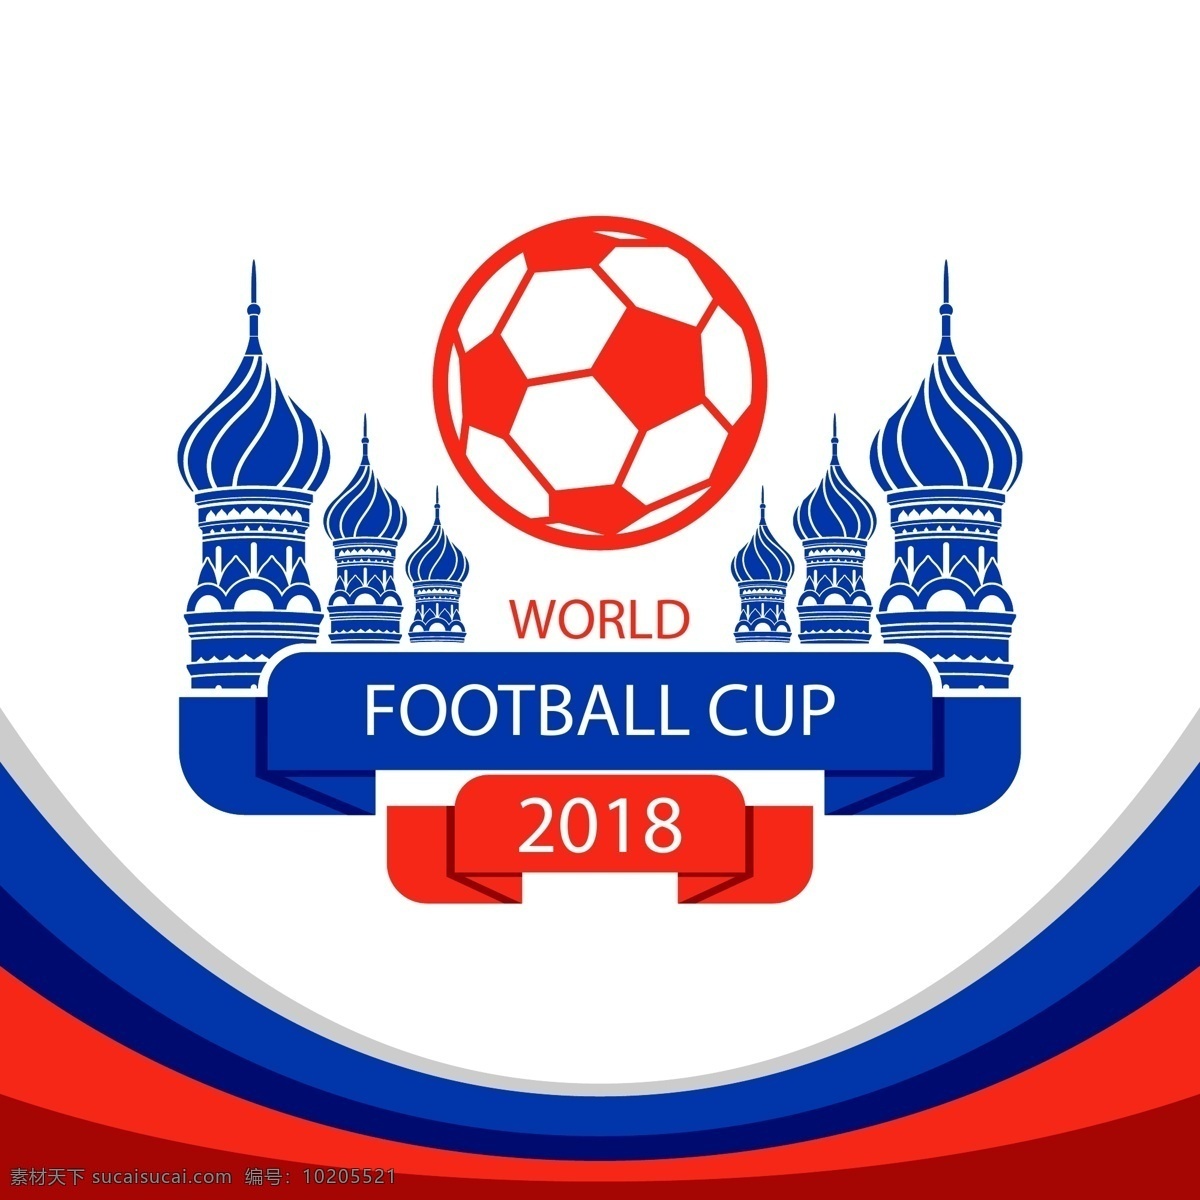 俄罗斯 足球 世界杯 2018 俄罗斯世界杯 足球世界杯 圣瓦西里 大教堂 人群 人物 剪影 欢呼 庆祝 文化艺术 体育运动